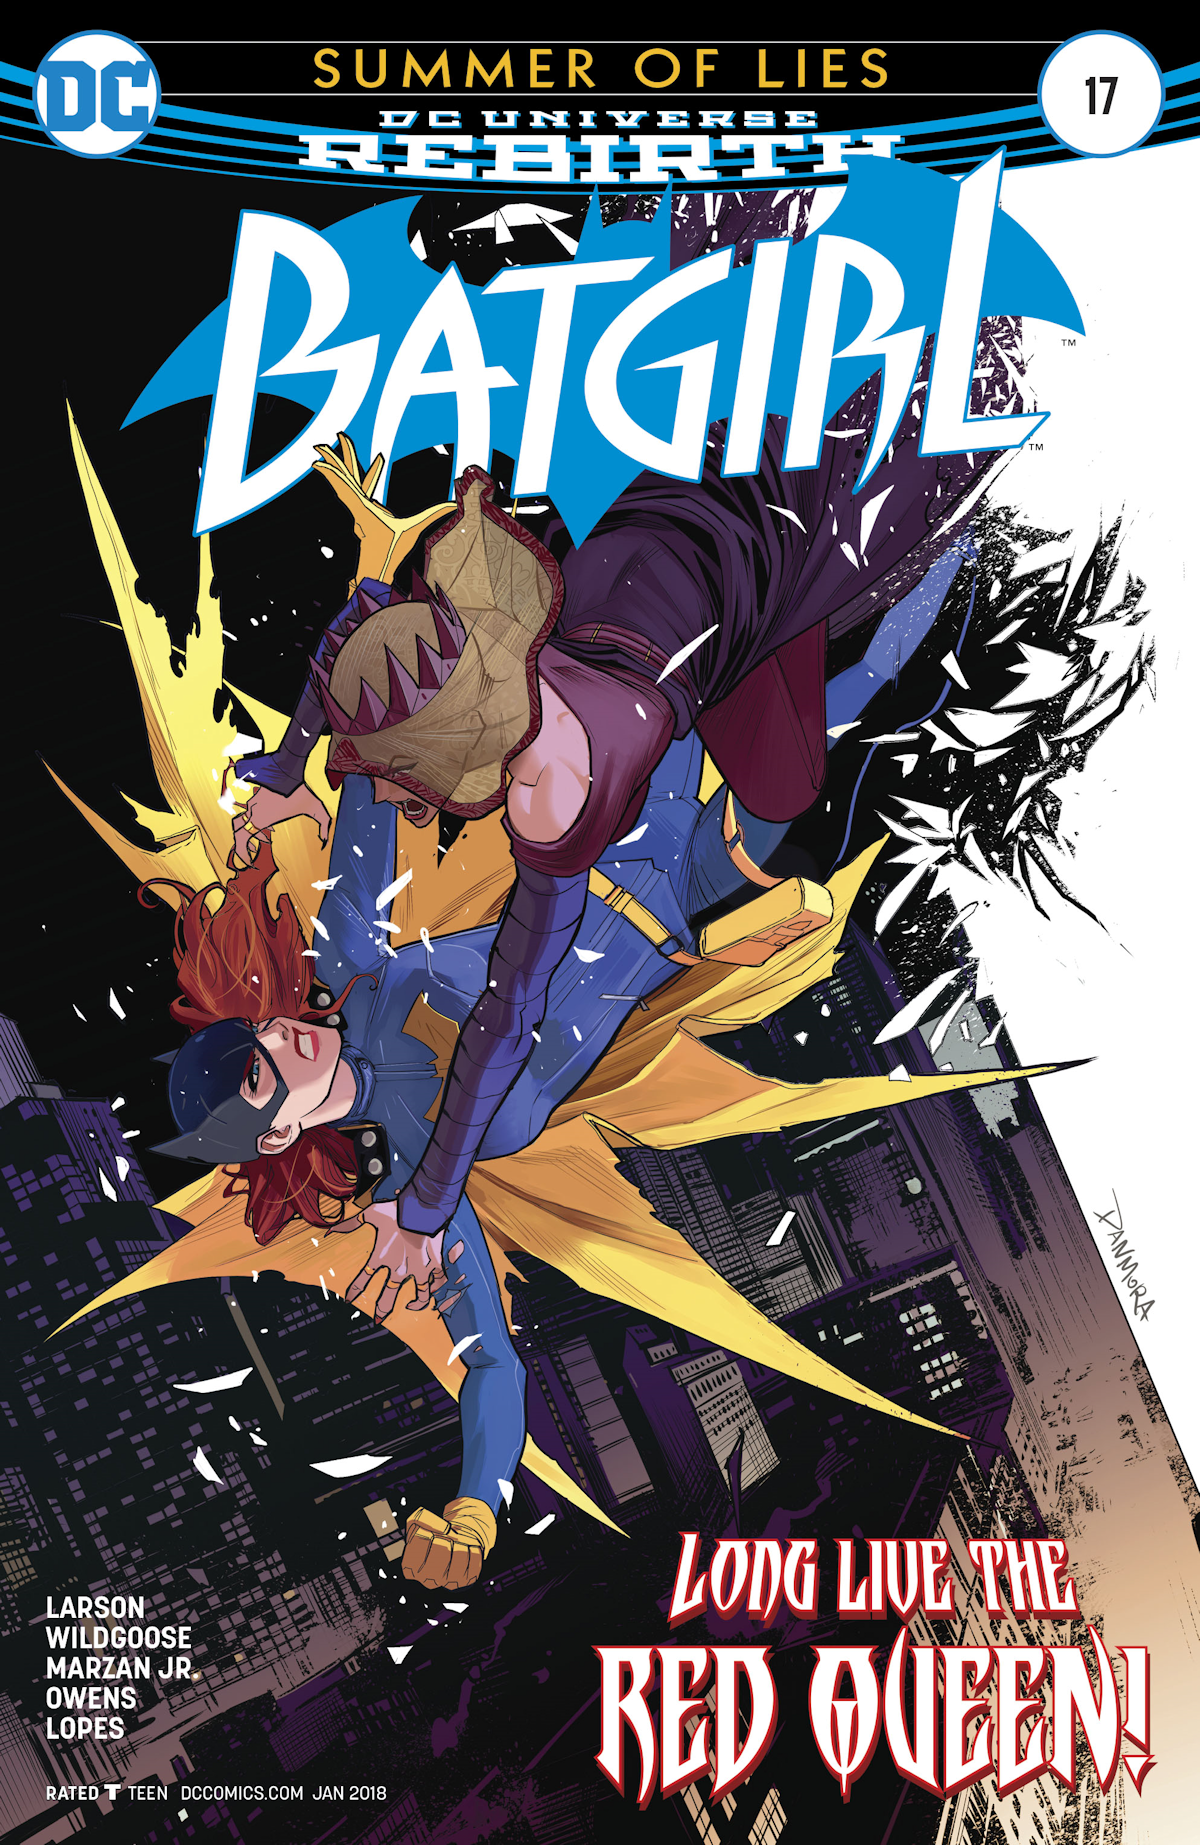 Batgirl Vol. 5 17 (Cover A)